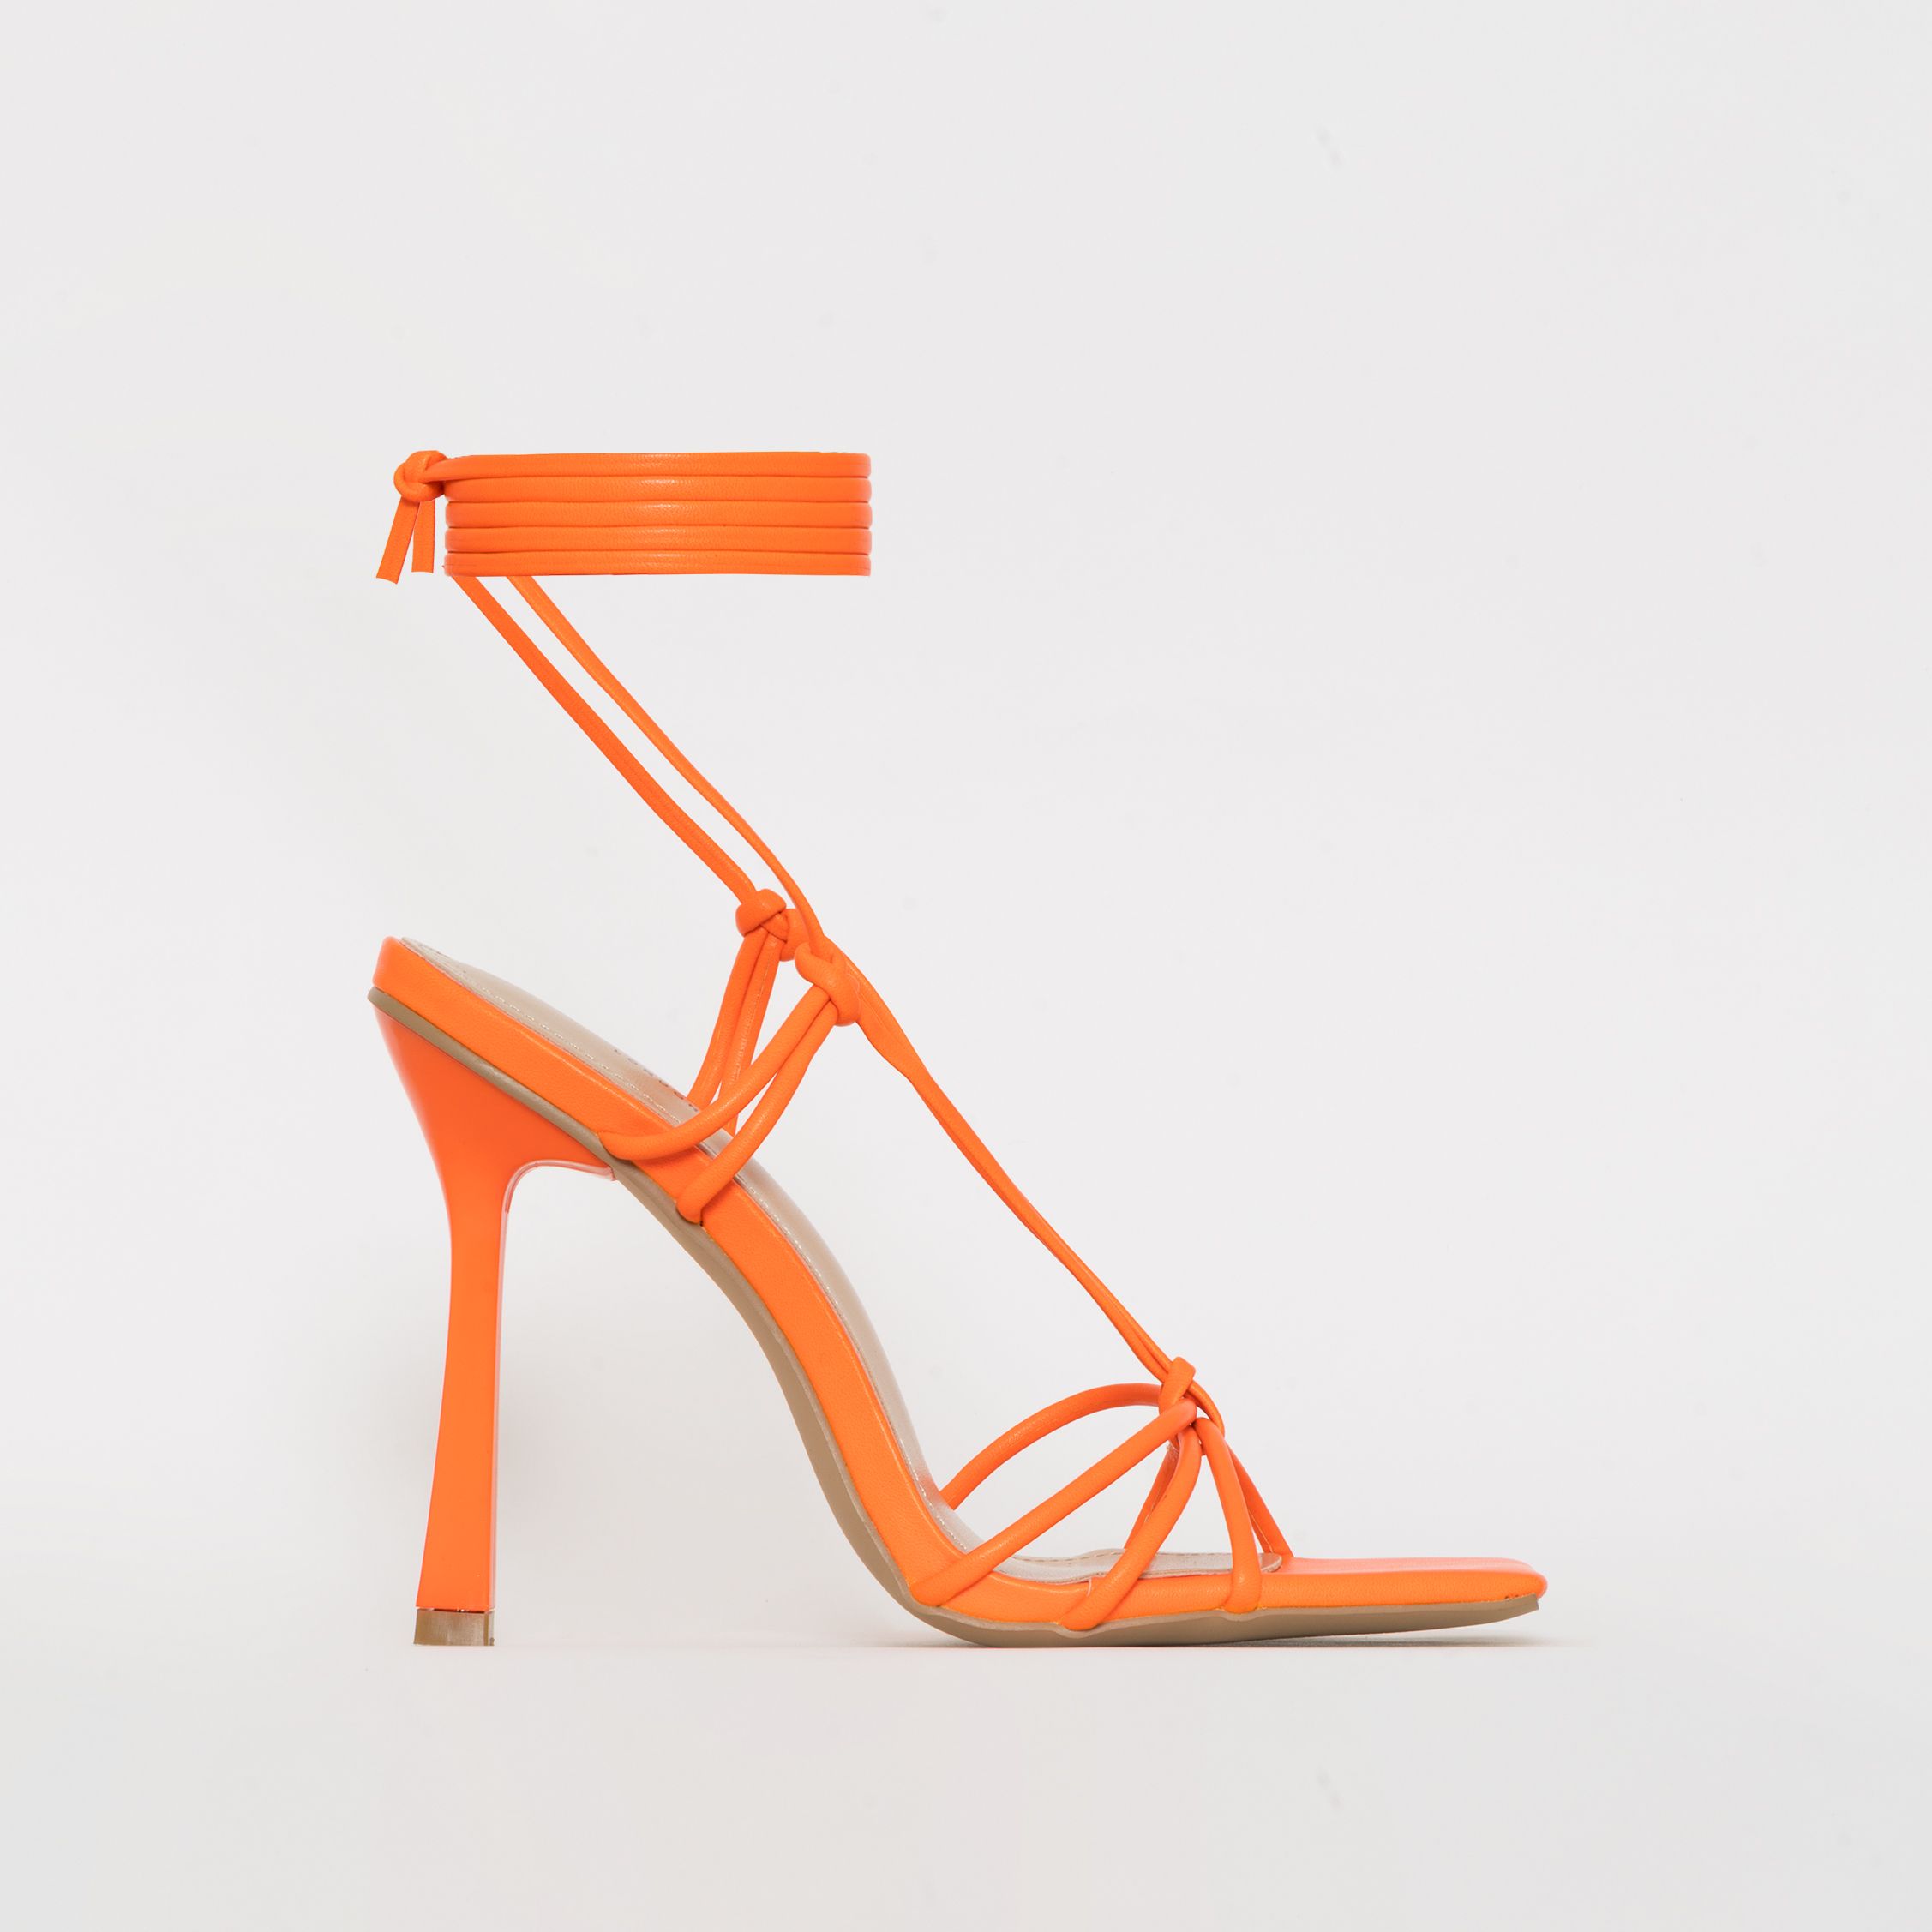 Flame Neon Orange Strappy Lace Up Square Toe Stiletto Heels